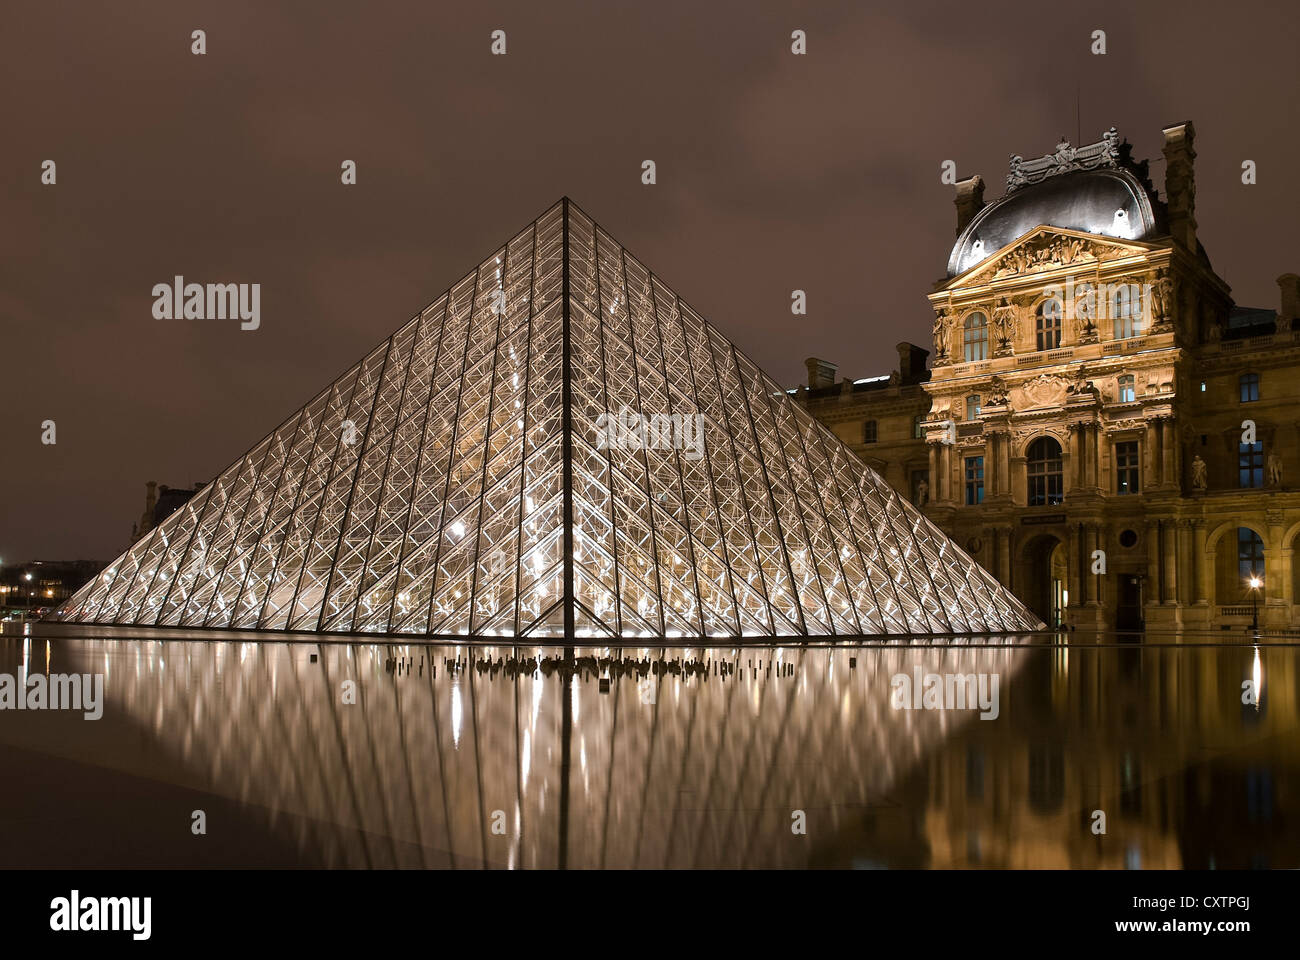 The Louvre museum, Paris, France Stock Photo